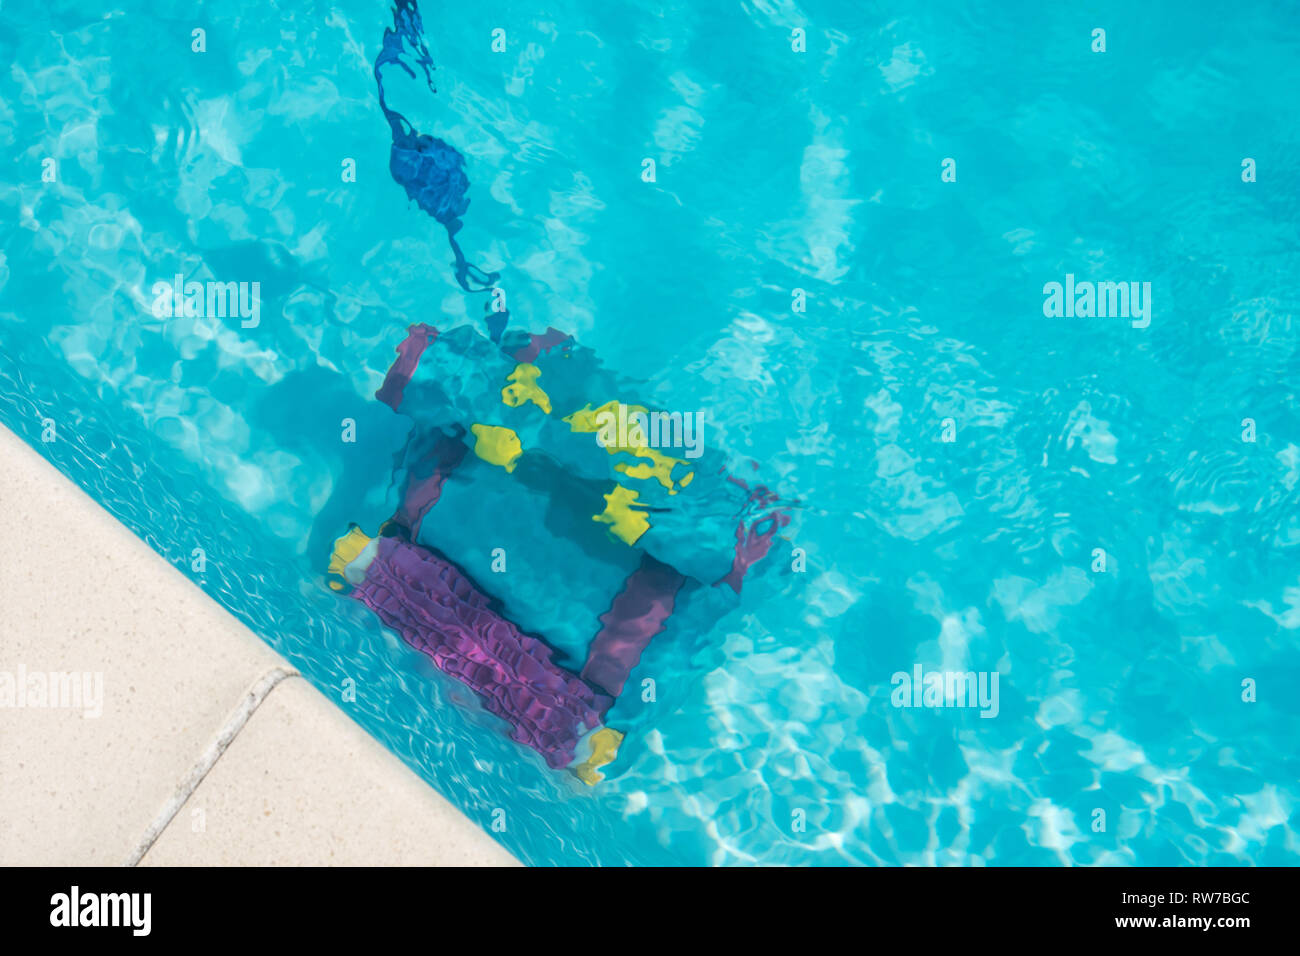 Reinigung Roboter für die Reinigung des unteren Pool. Wartung pool Konzept Stockfoto